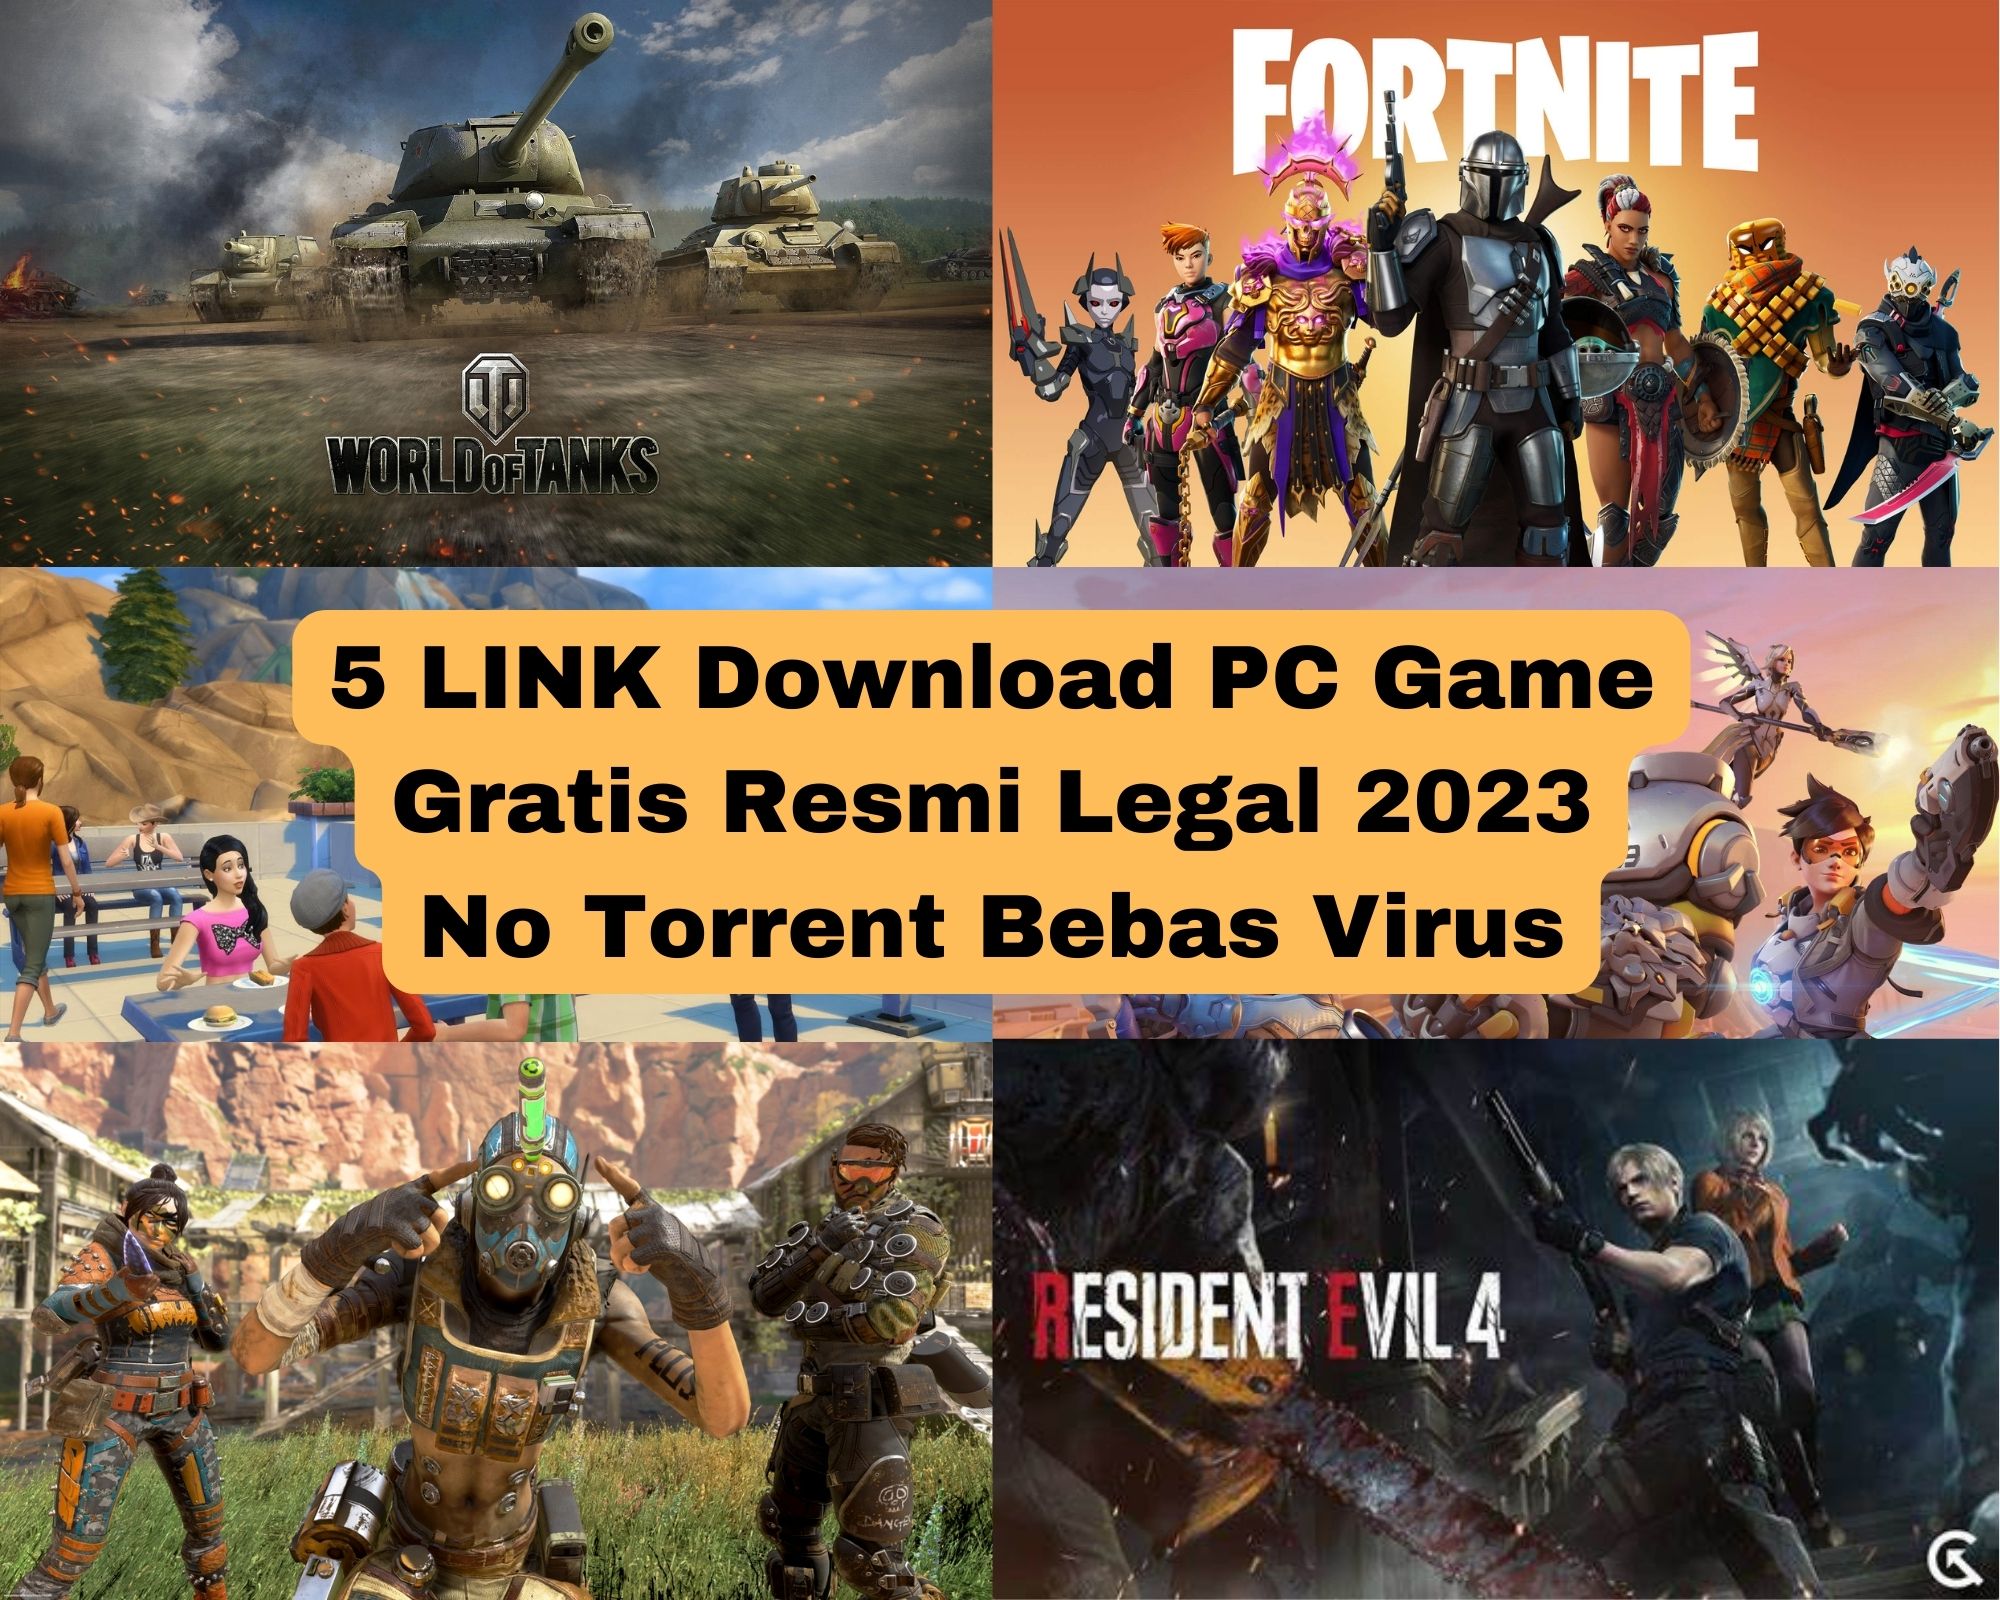 7 Situs Game Gratis Terbaik, Legal dan Tanpa Virus!